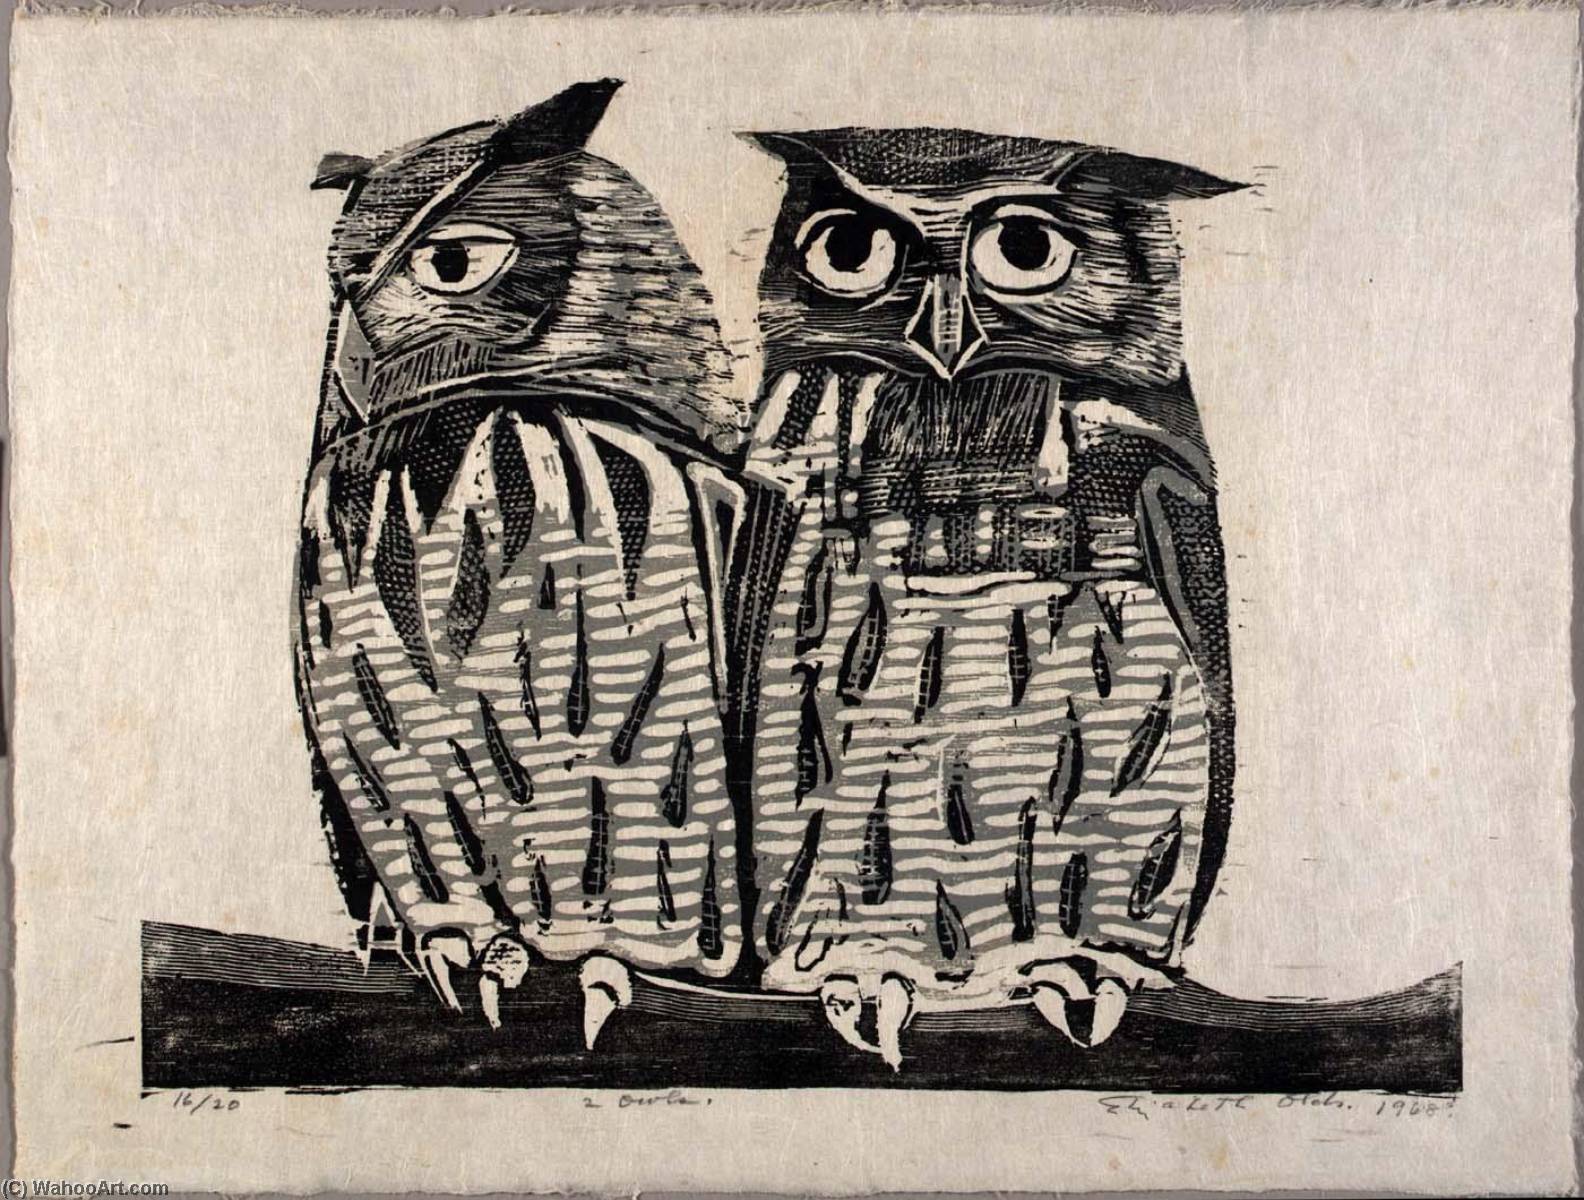 WikiOO.org - Encyclopedia of Fine Arts - Lukisan, Artwork Elizabeth Olds - Two Owls